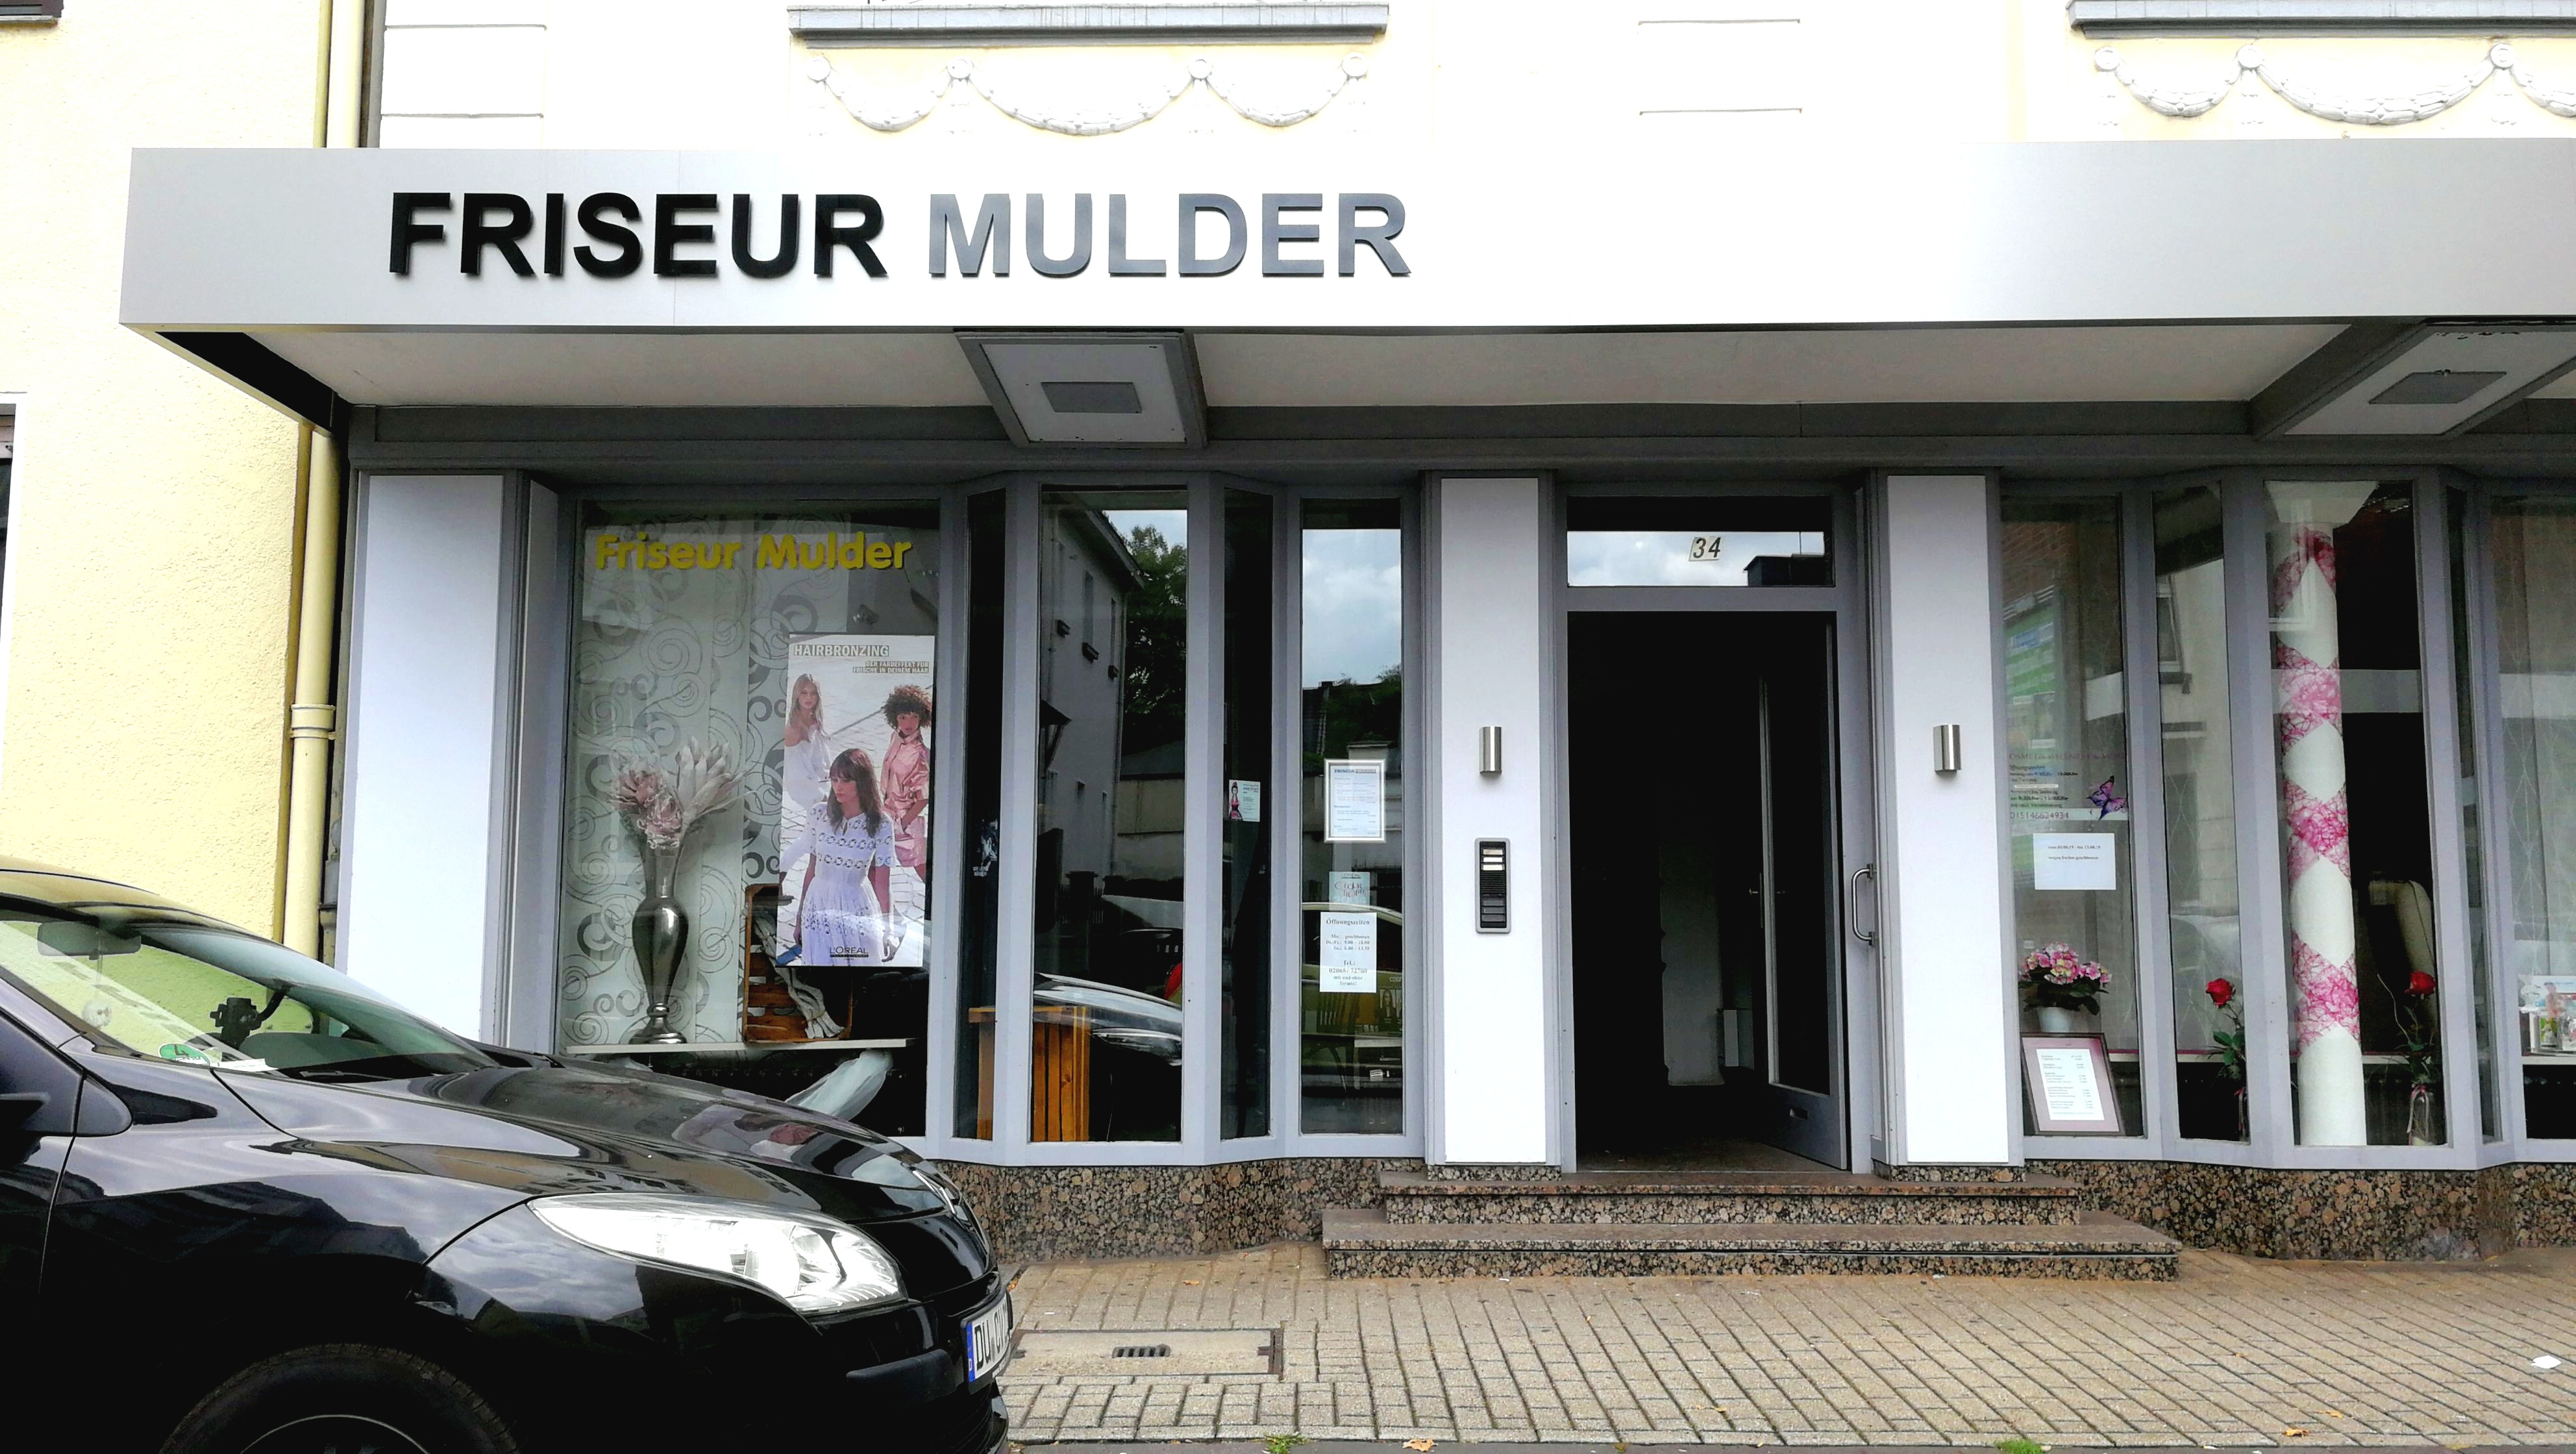 Friseur Mulder... Haare gut - alles gut. Ruf an!
www.friseur-mulder.de